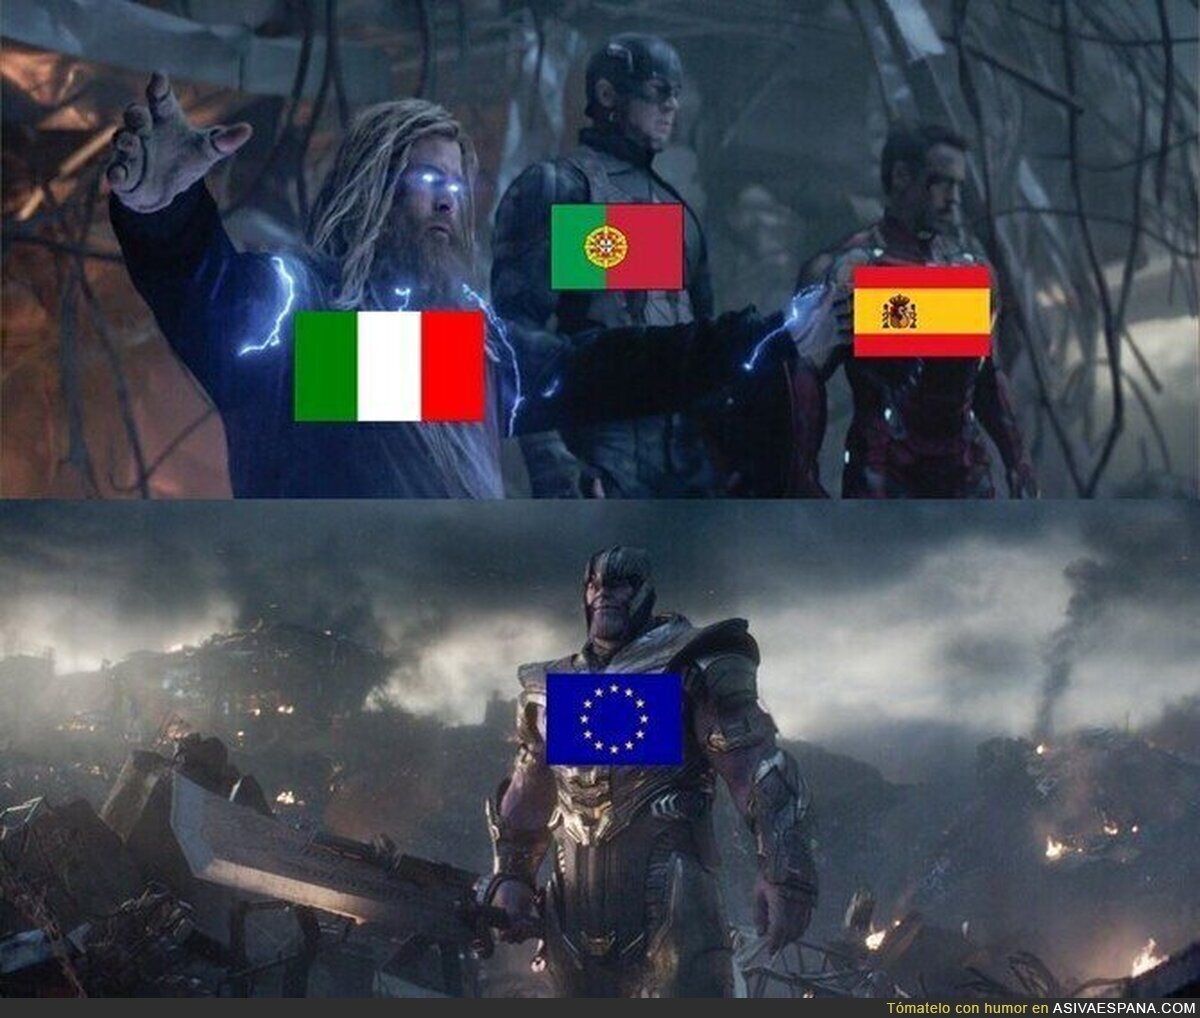 El sur de Europa tiene un enemigo común